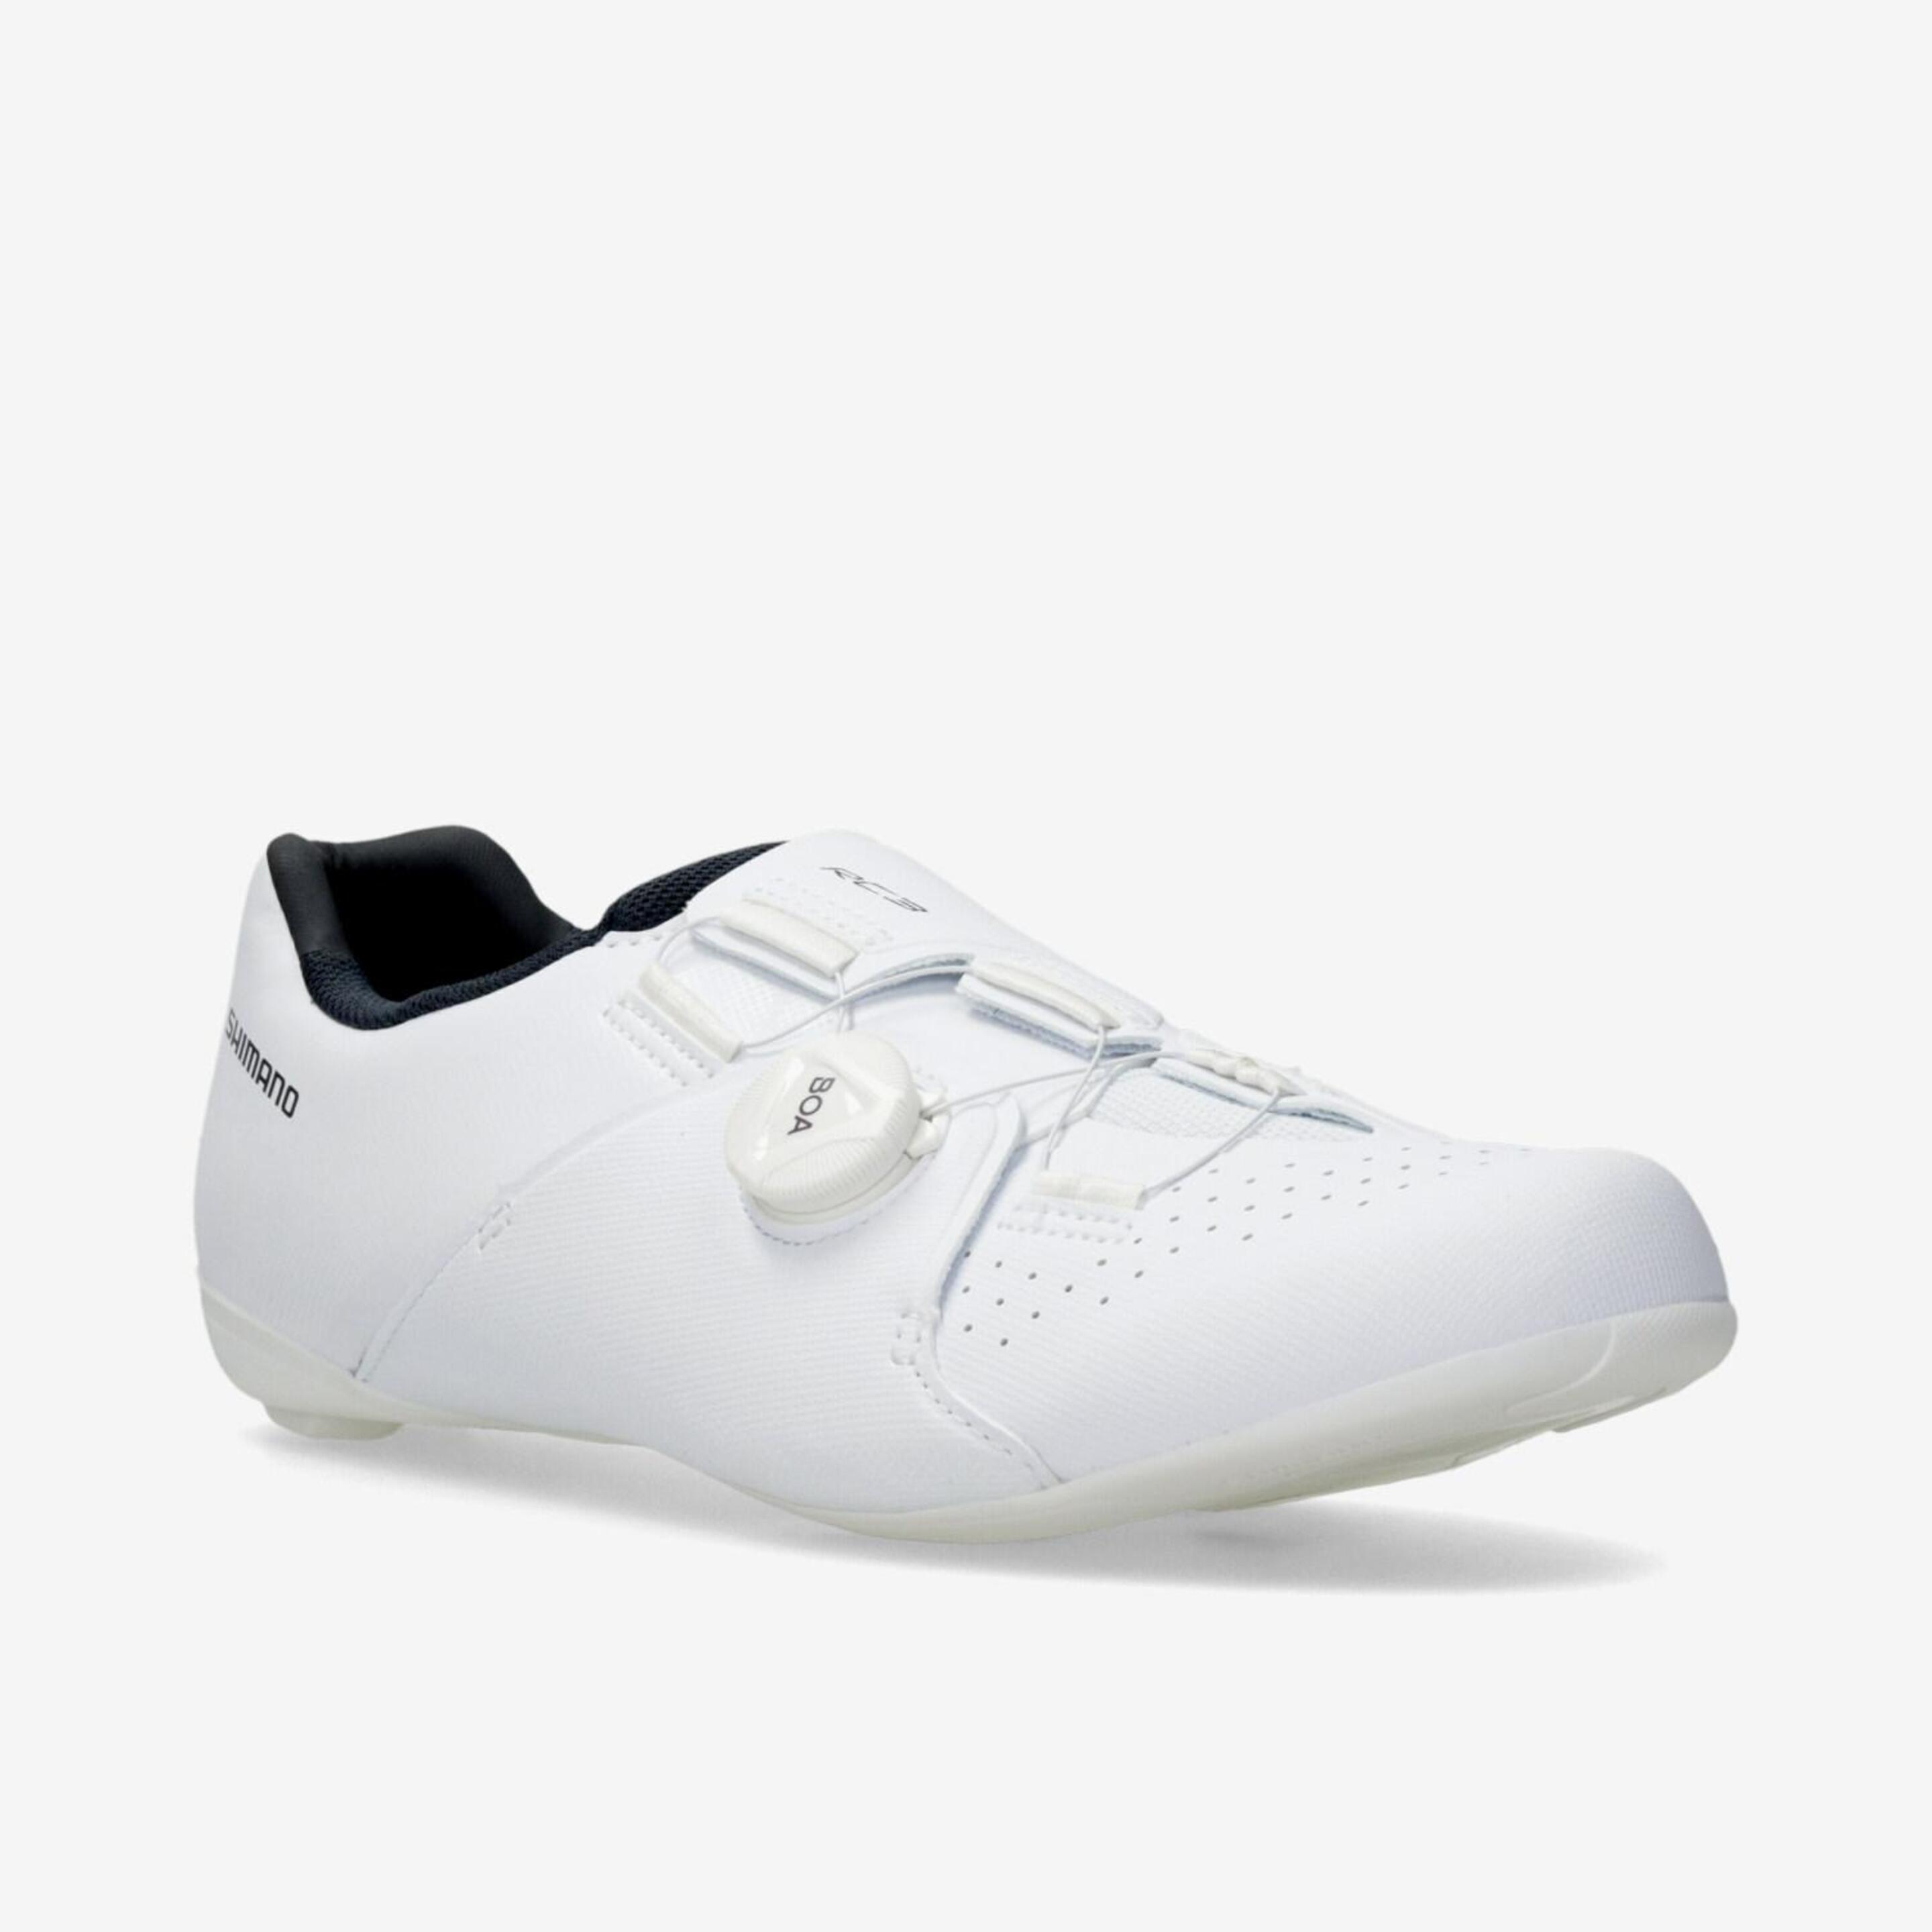 Shimano Rc 300 Boa - Branco - Sapatos Ciclismo Homem | Sport Zone